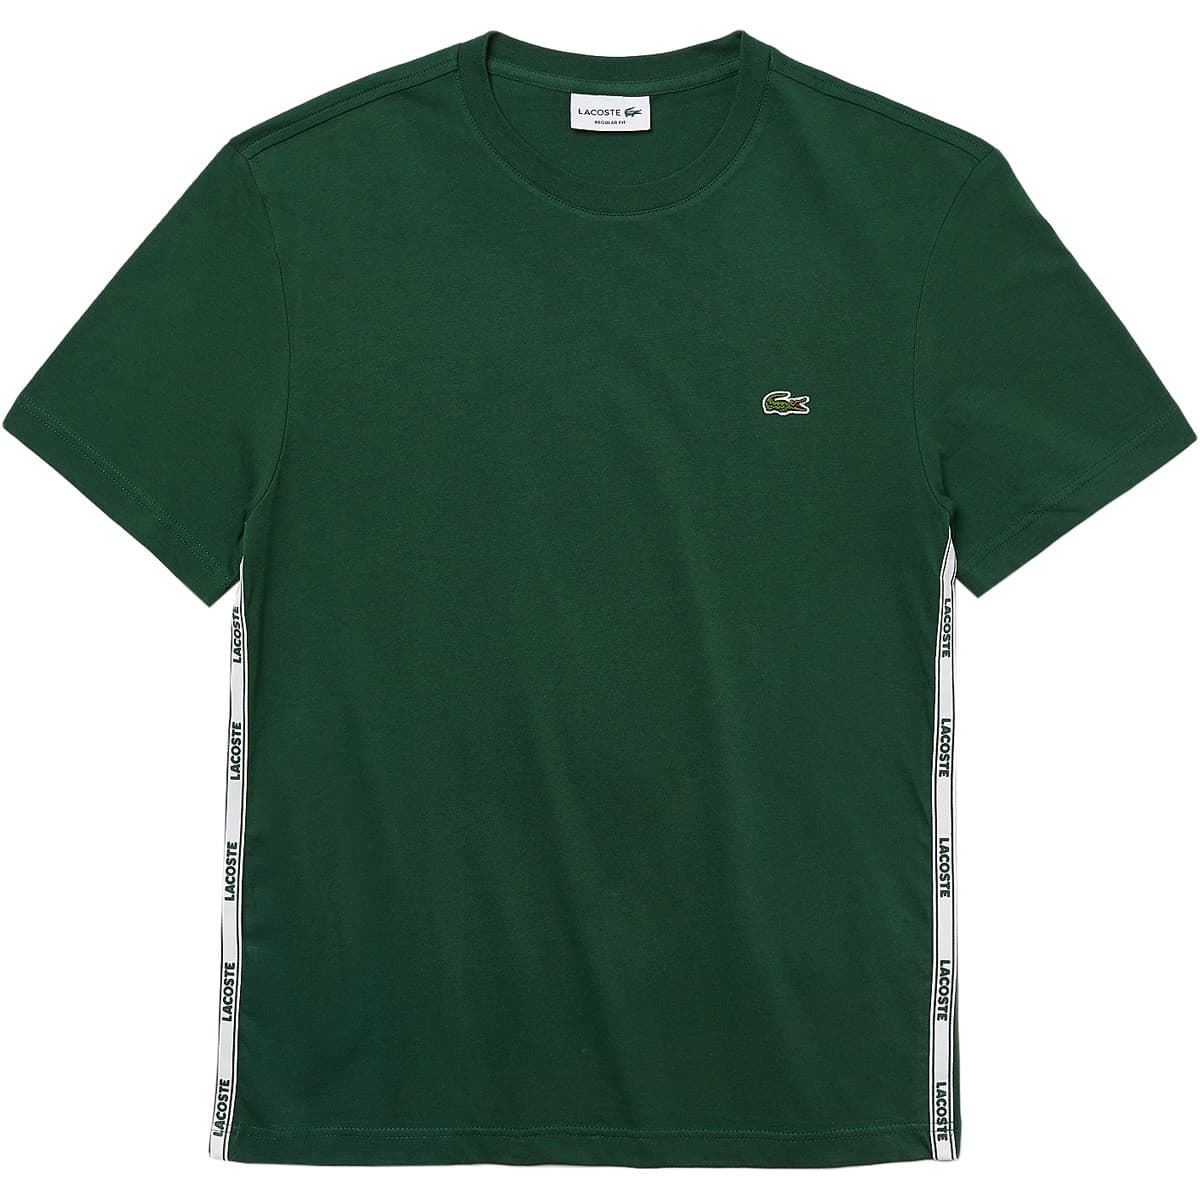 Camiseta LACOSTE TH1207 00 132 verde - Imagen 3